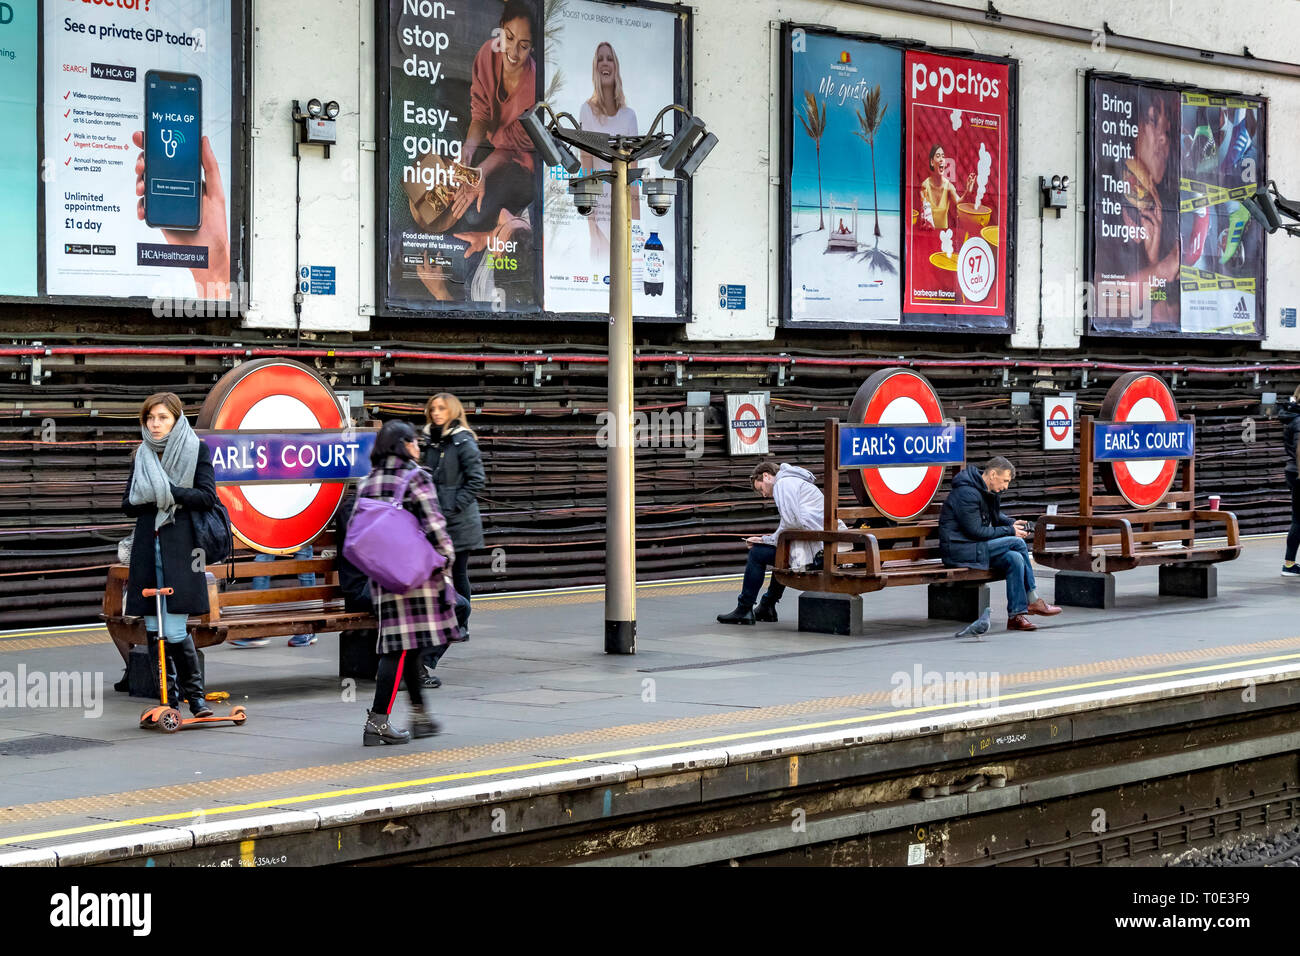 Personnes attendant sur la plate-forme pour un train District Line à la station de métro Earls court, Londres, Royaume-Uni Banque D'Images